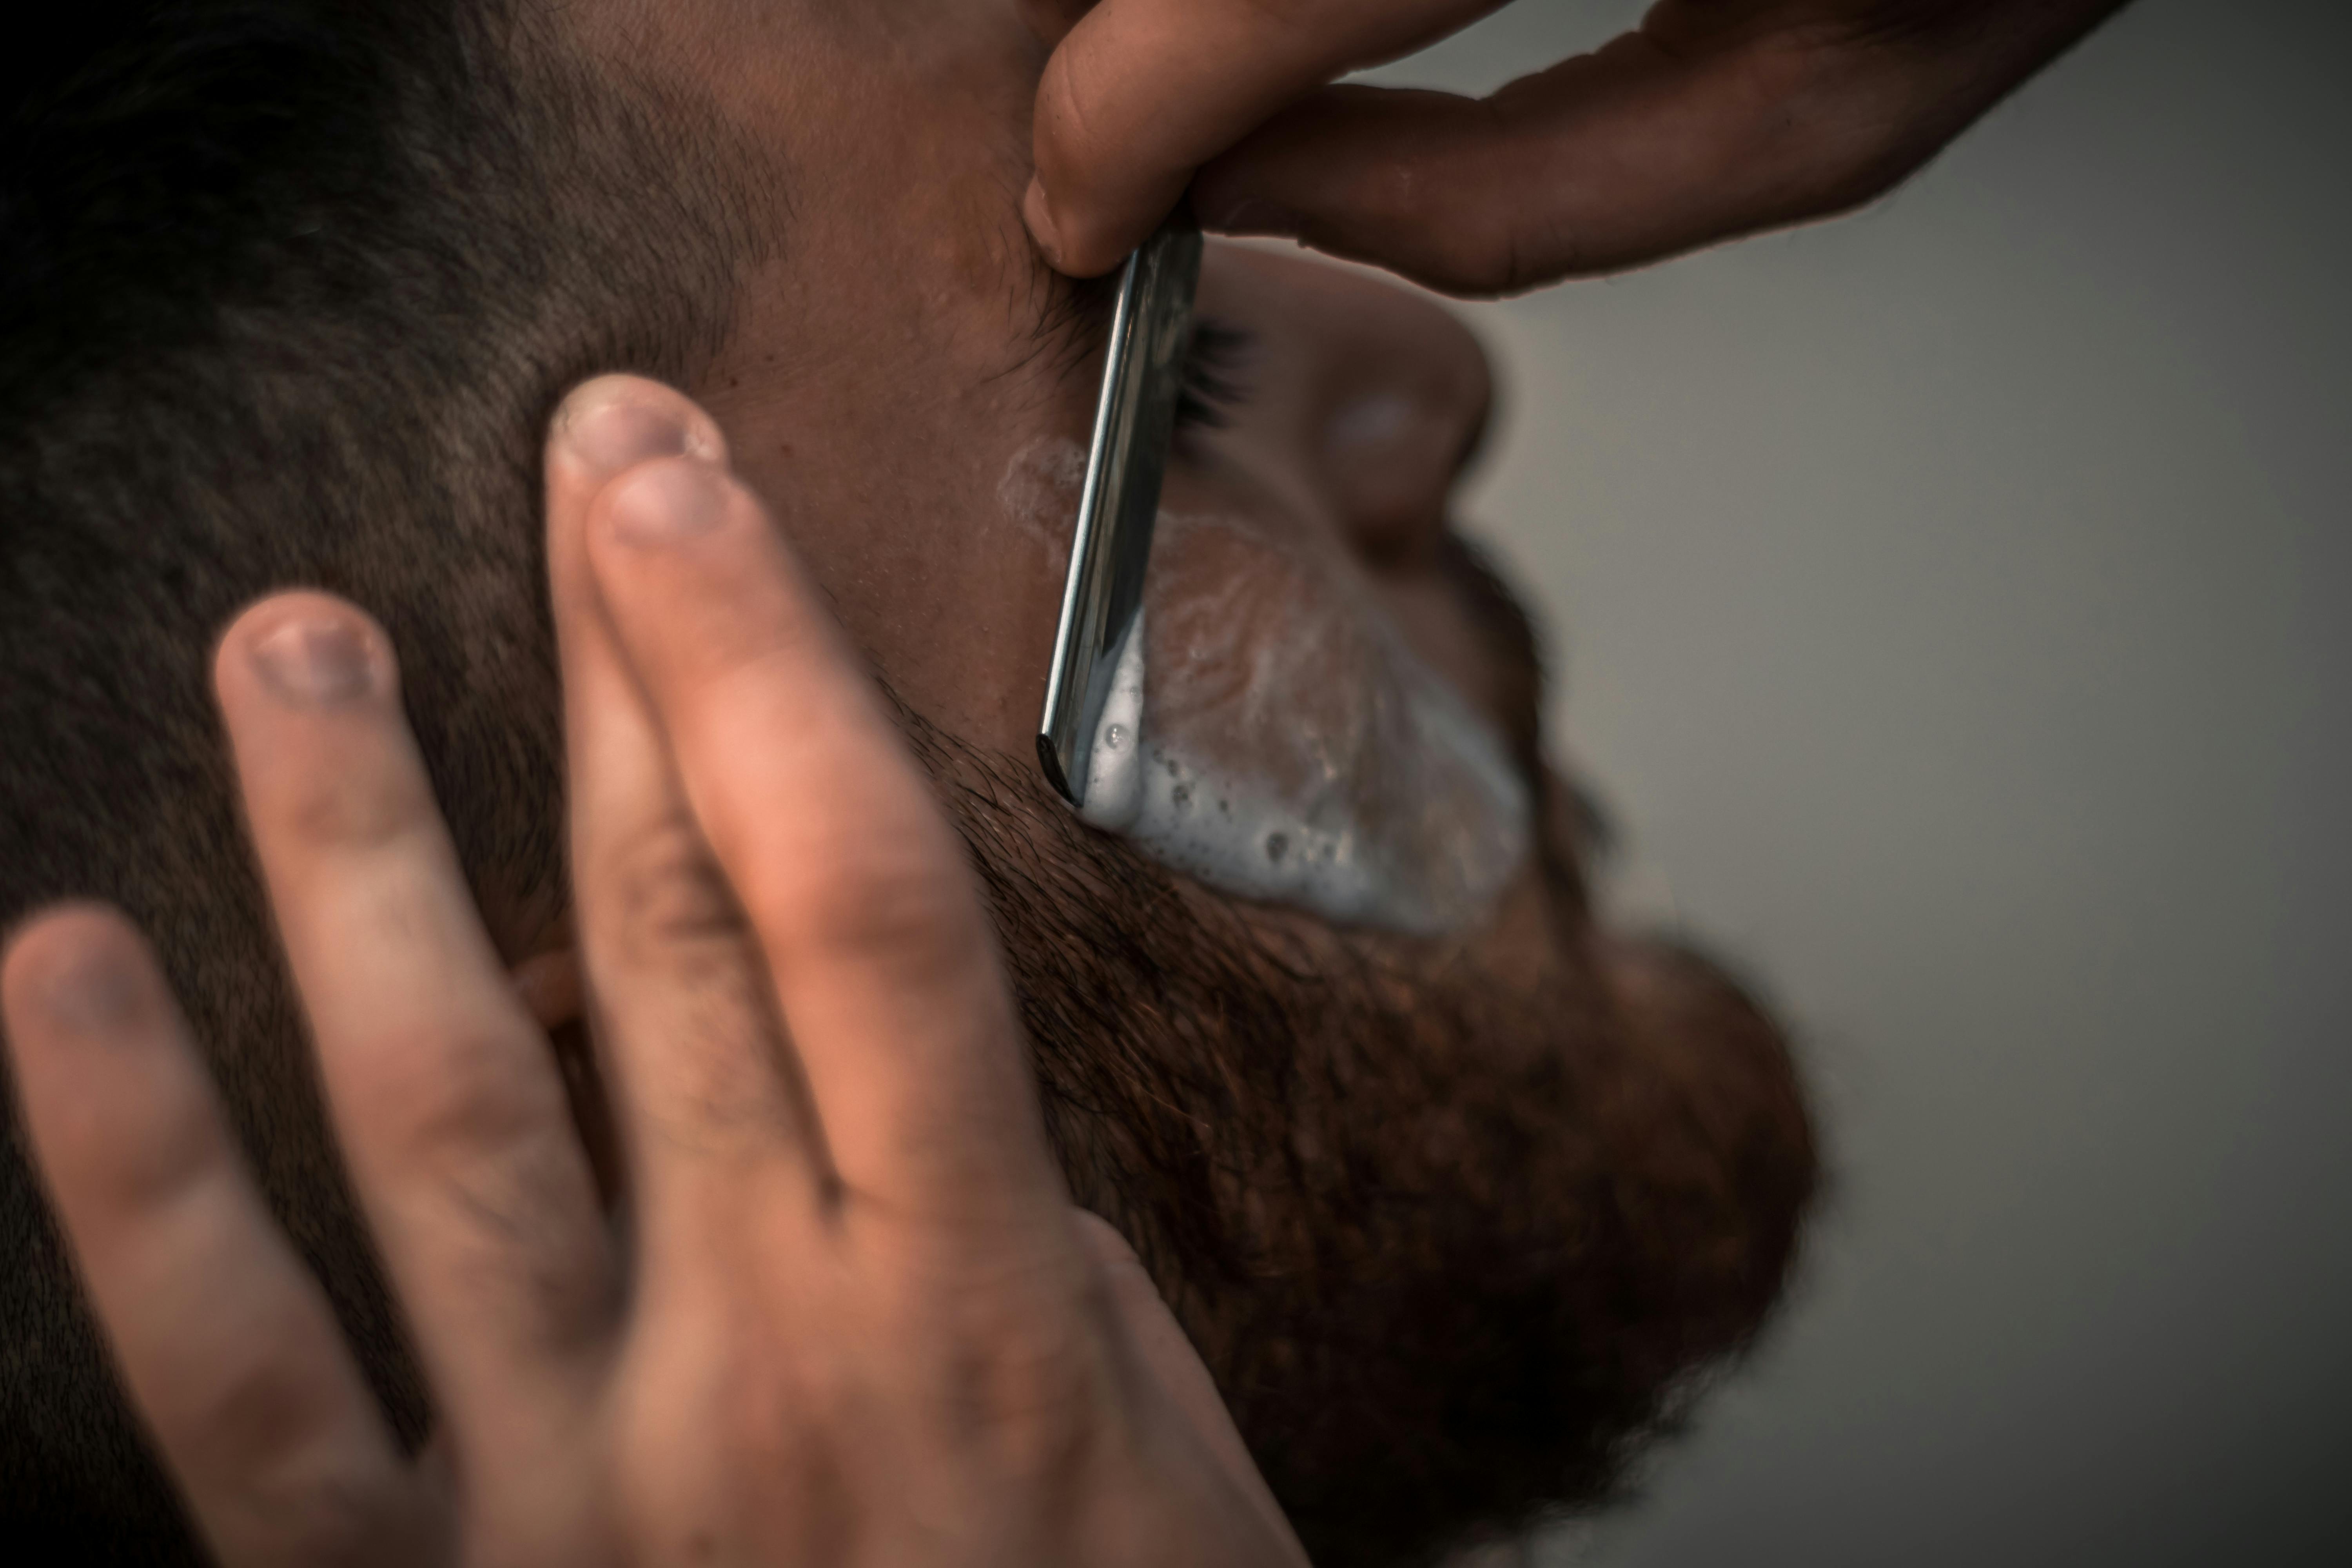 Person holding razor | Photo: Pexels